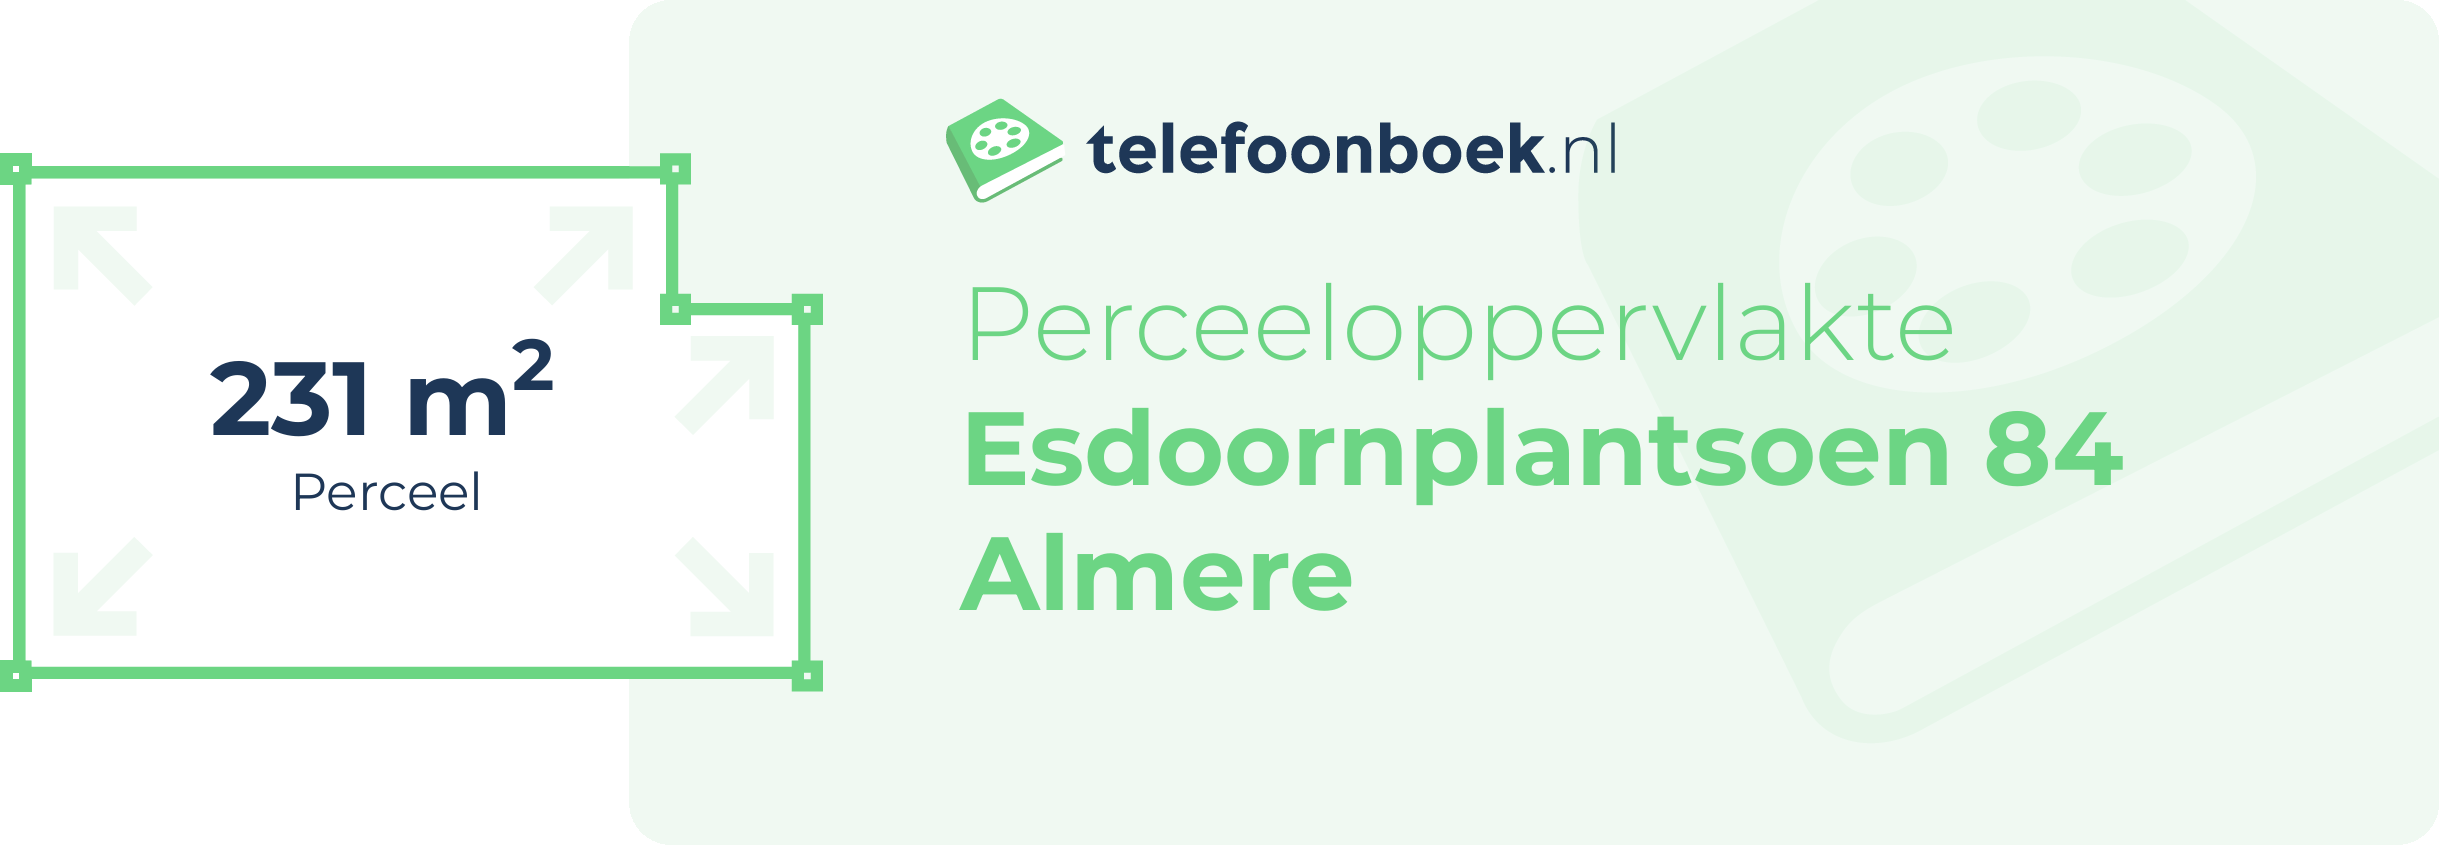 Perceeloppervlakte Esdoornplantsoen 84 Almere